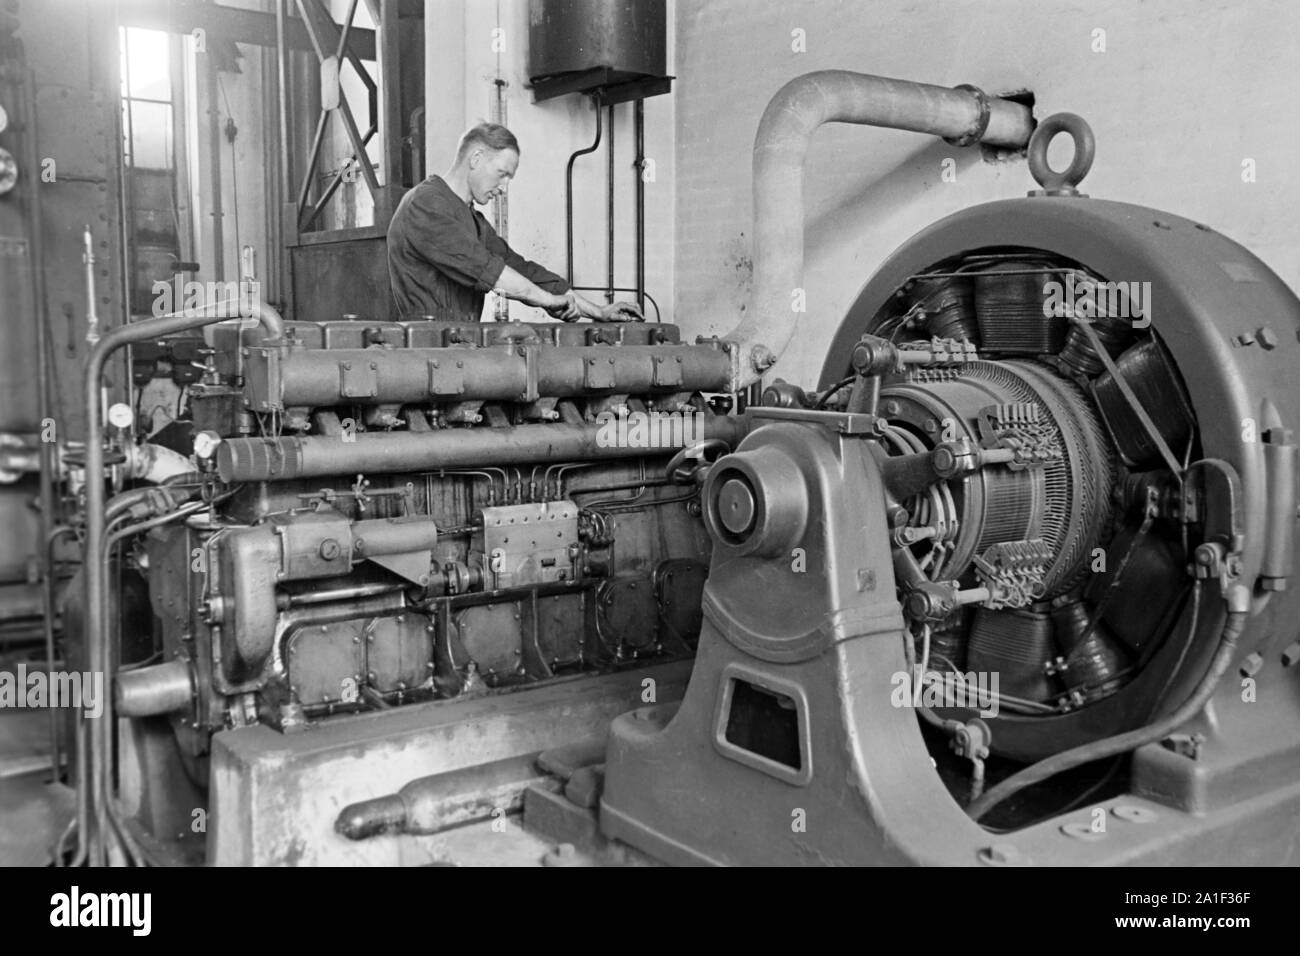 Motoren treiben der Maschinen der Konservenfabrik C. Th. Lampe in Braunschweig an, Deutschland 1939. Engines keeping running the machines at the canning factory C. Th. Lampe in Brunswick, Germany 1939. Stock Photo